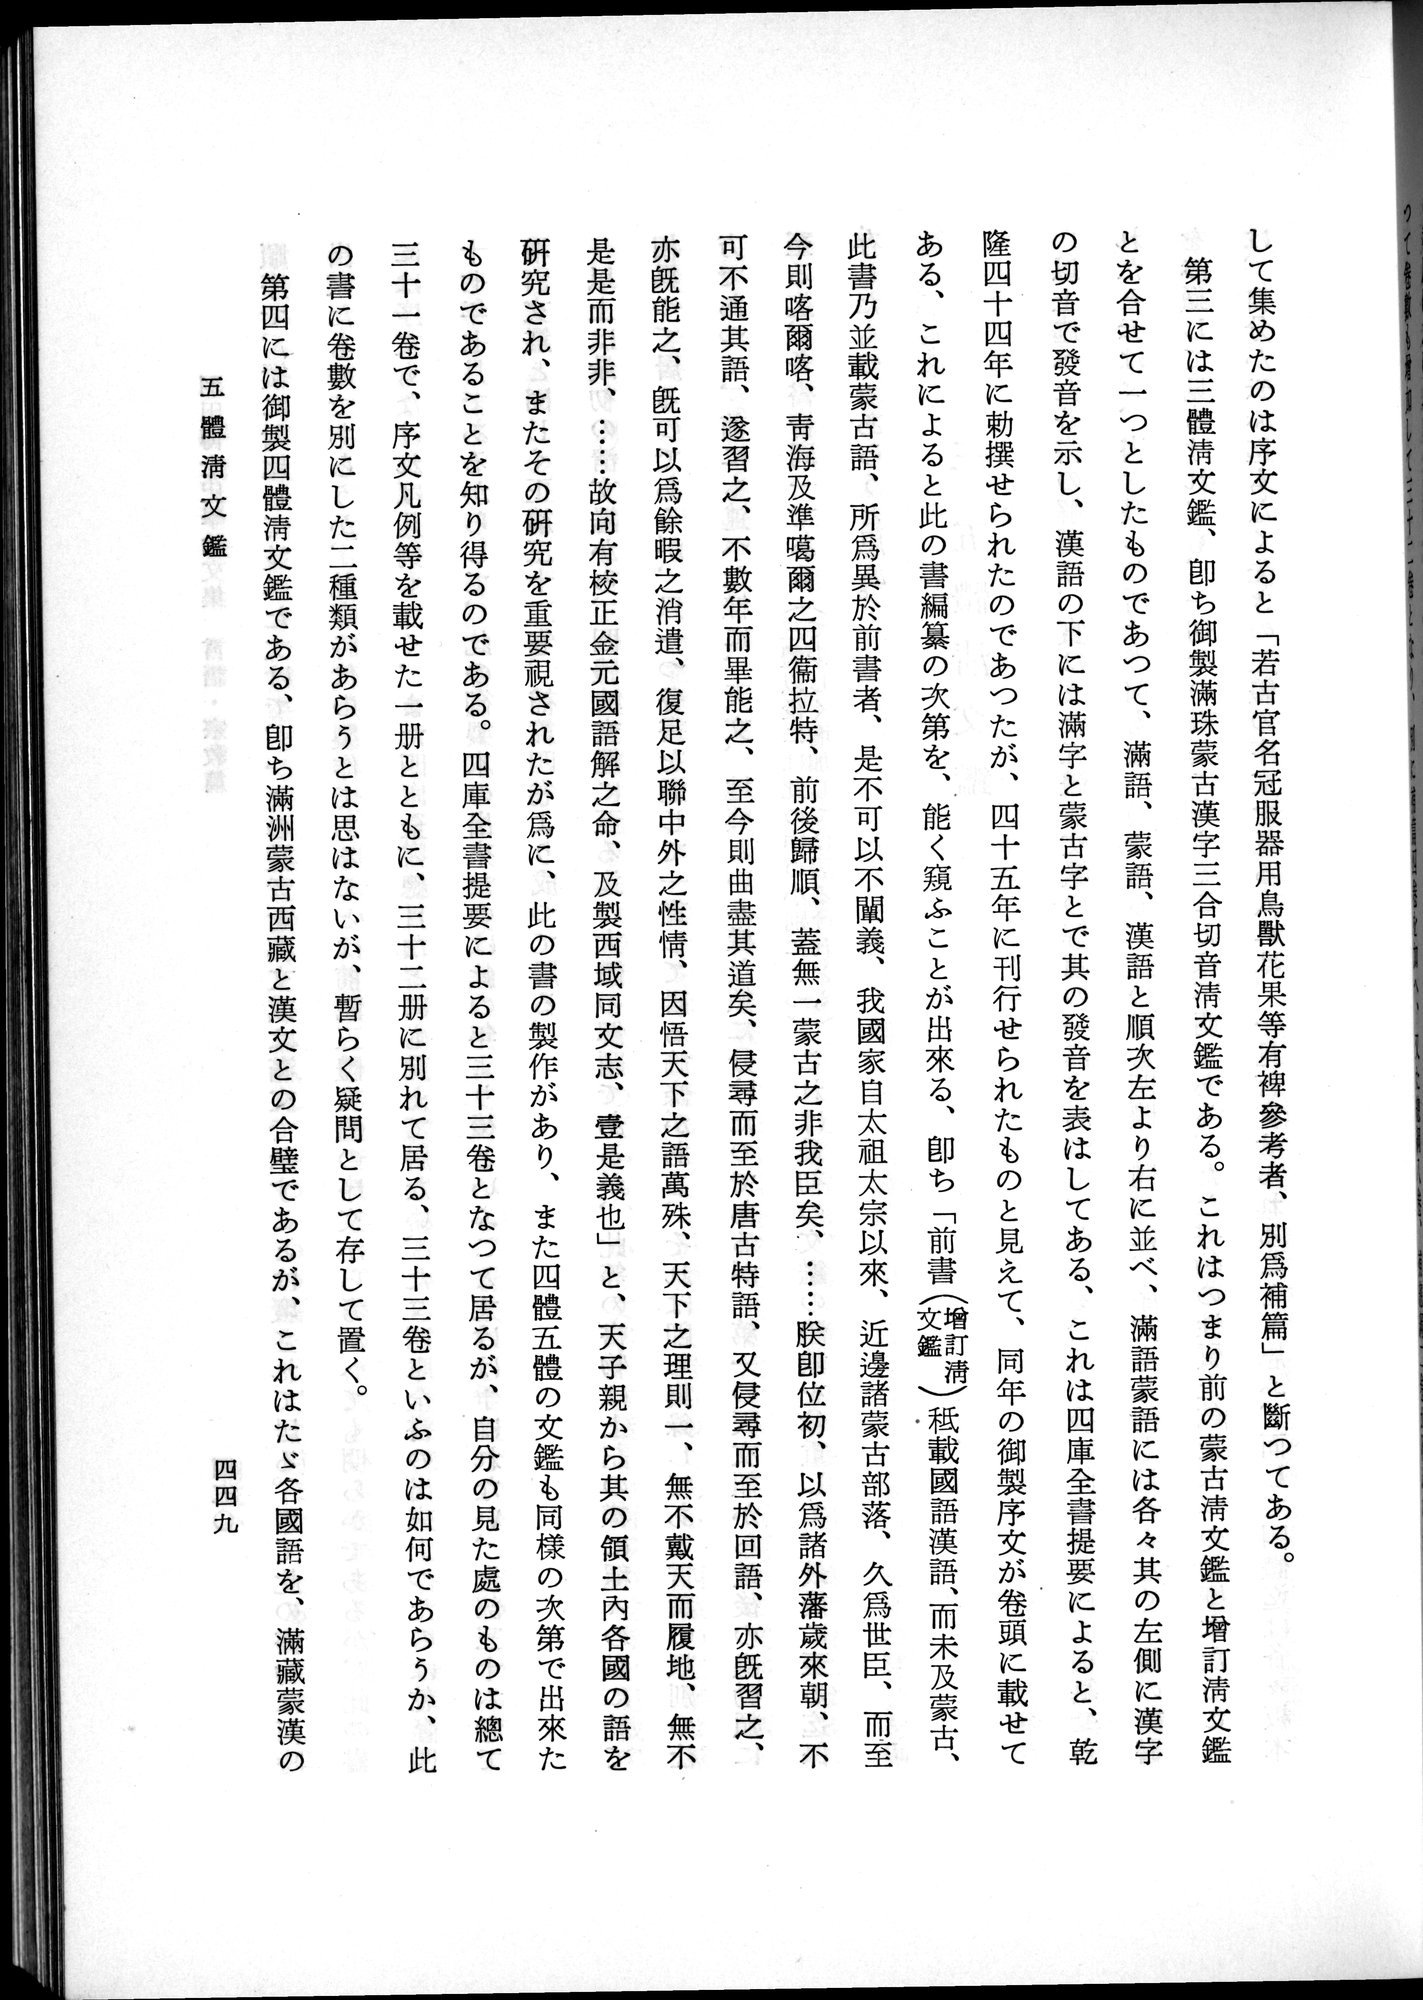 羽田博士史学論文集 : vol.2 / 511 ページ（白黒高解像度画像）